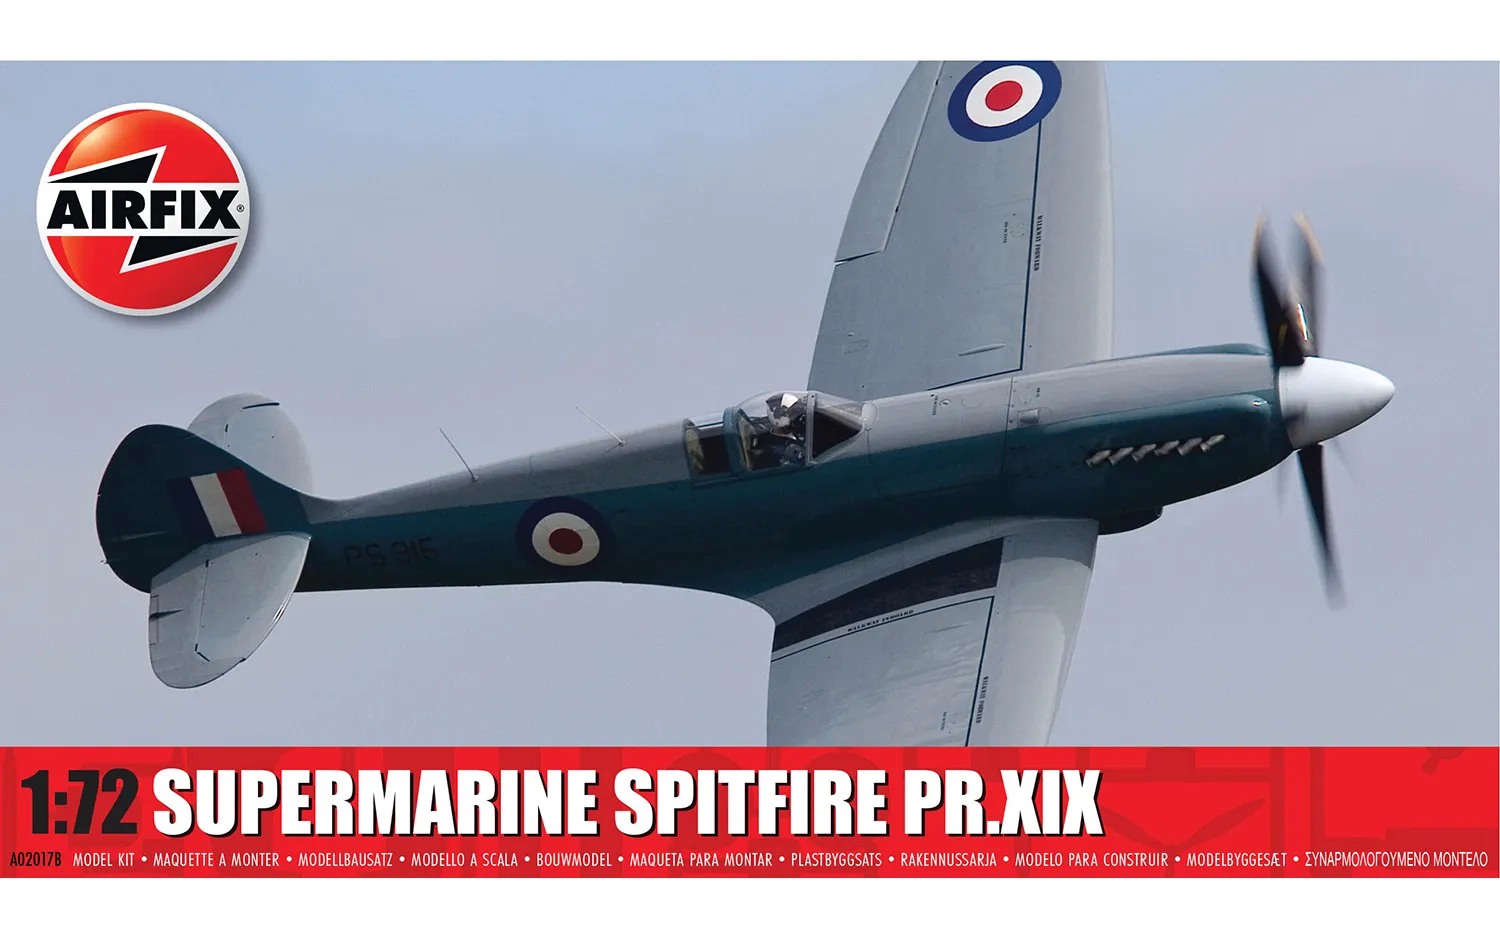 Supermarine Spitfire PR.XIX